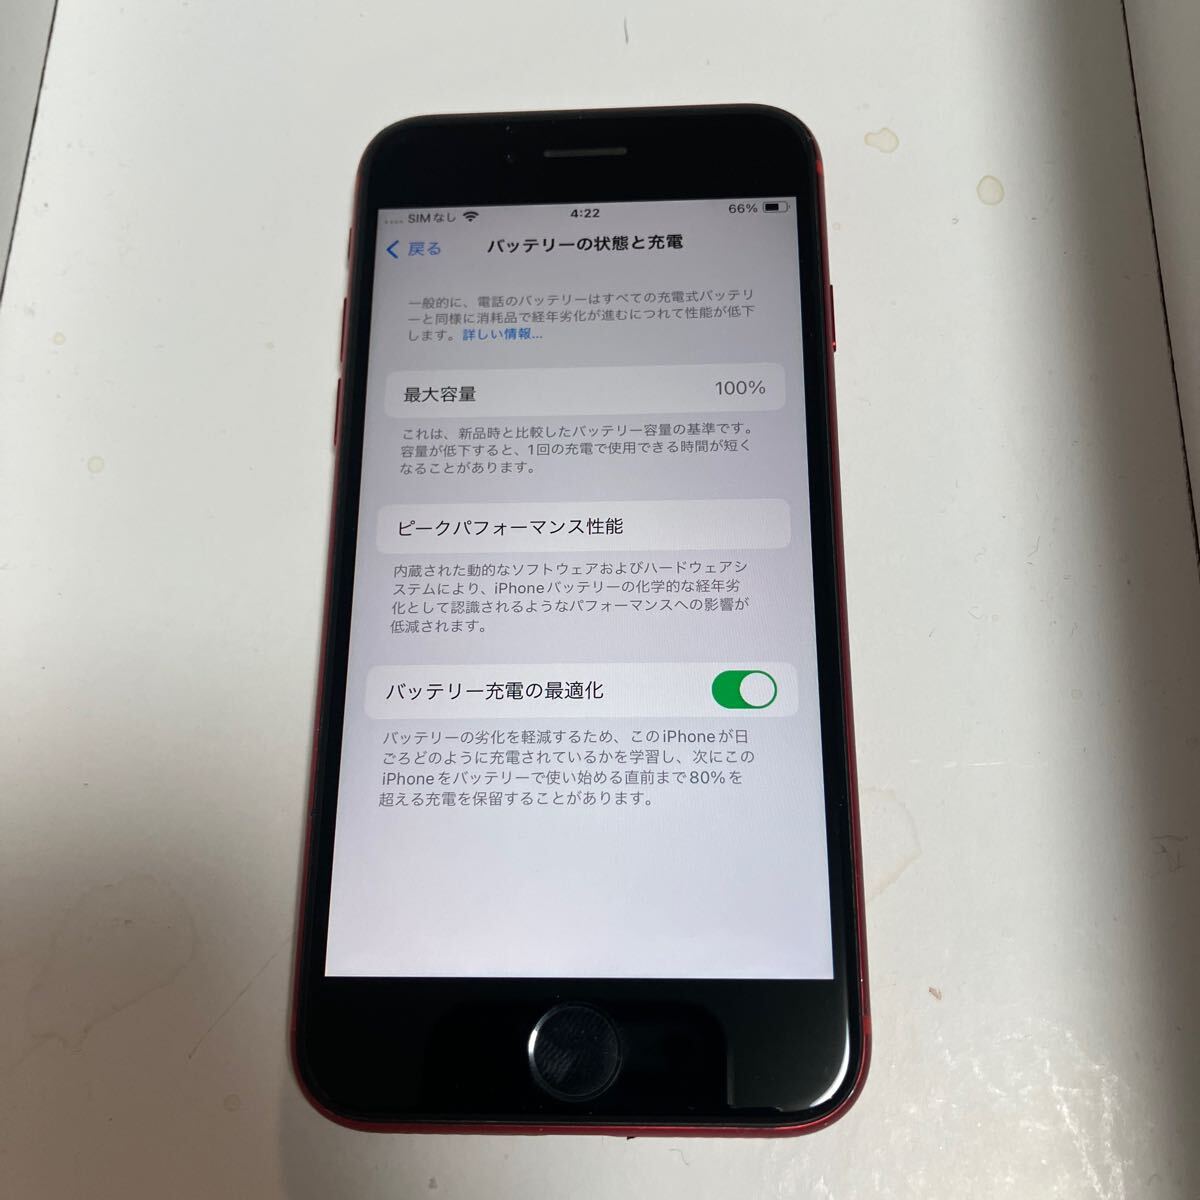 Apple iPhone SE2 SIMフリー product RED 128GB バッテリー容量100%表示エラー無の画像10